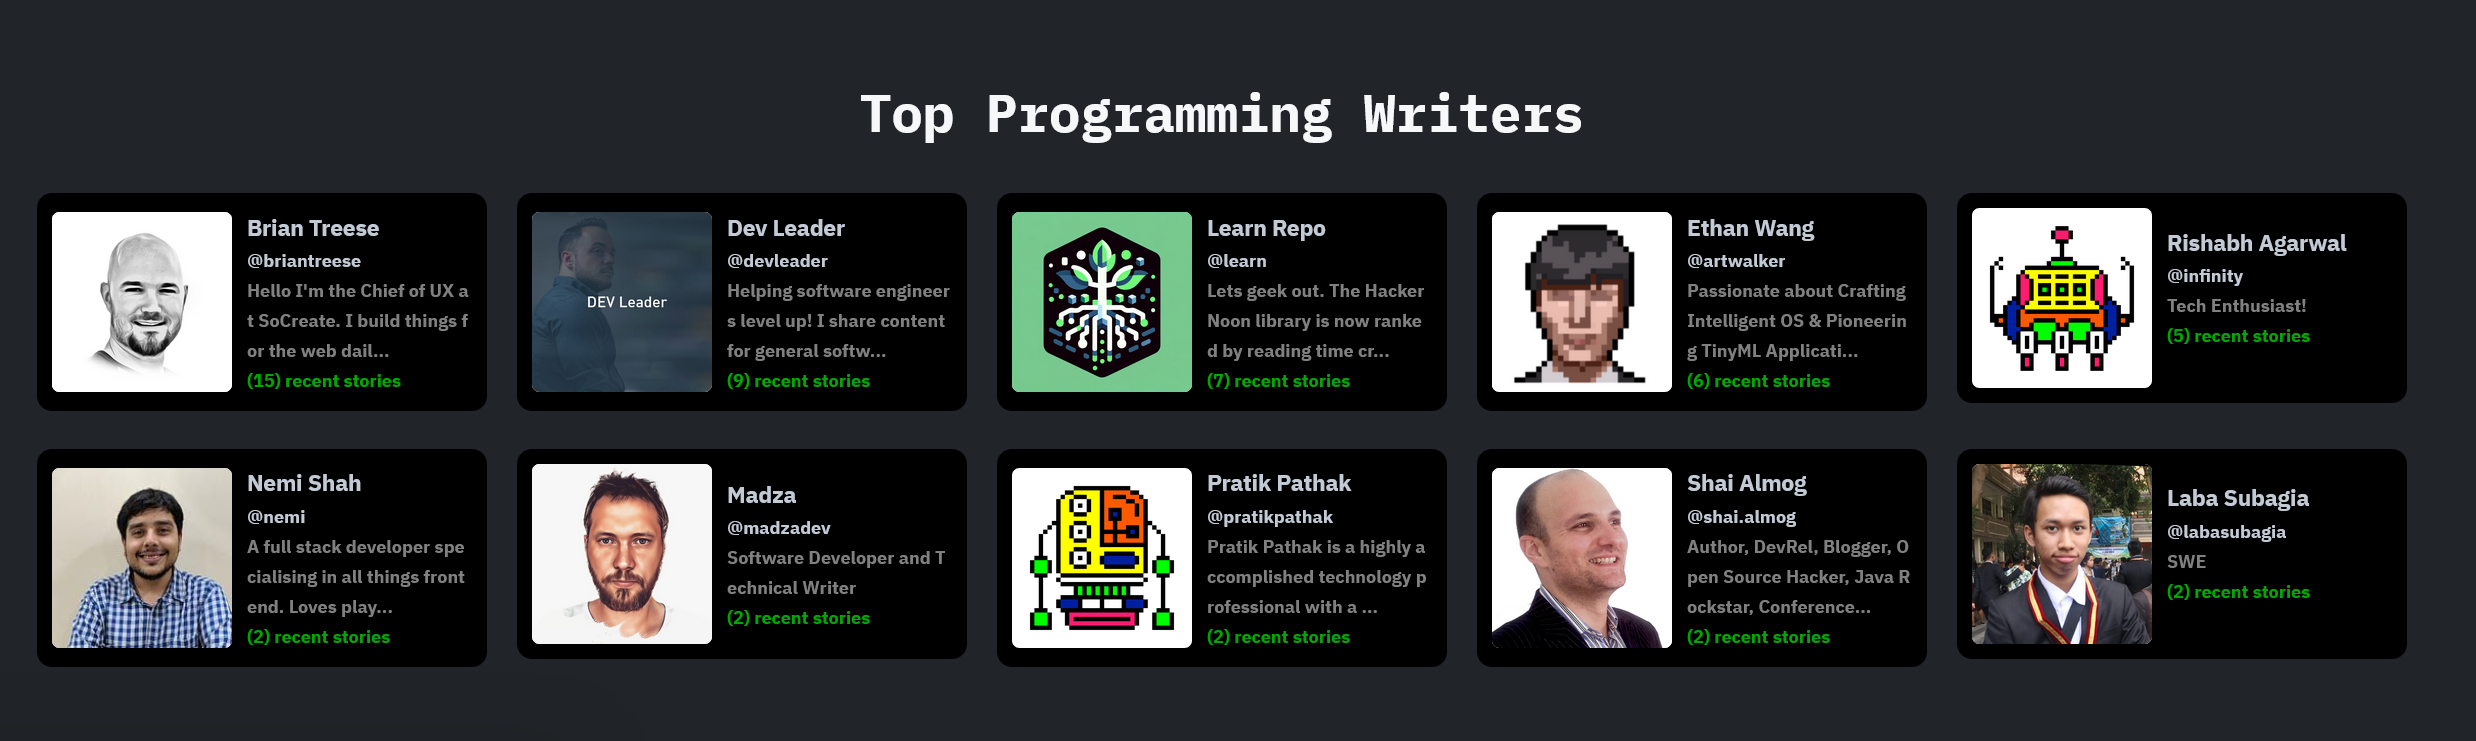 Last Week's Top Programming Writers